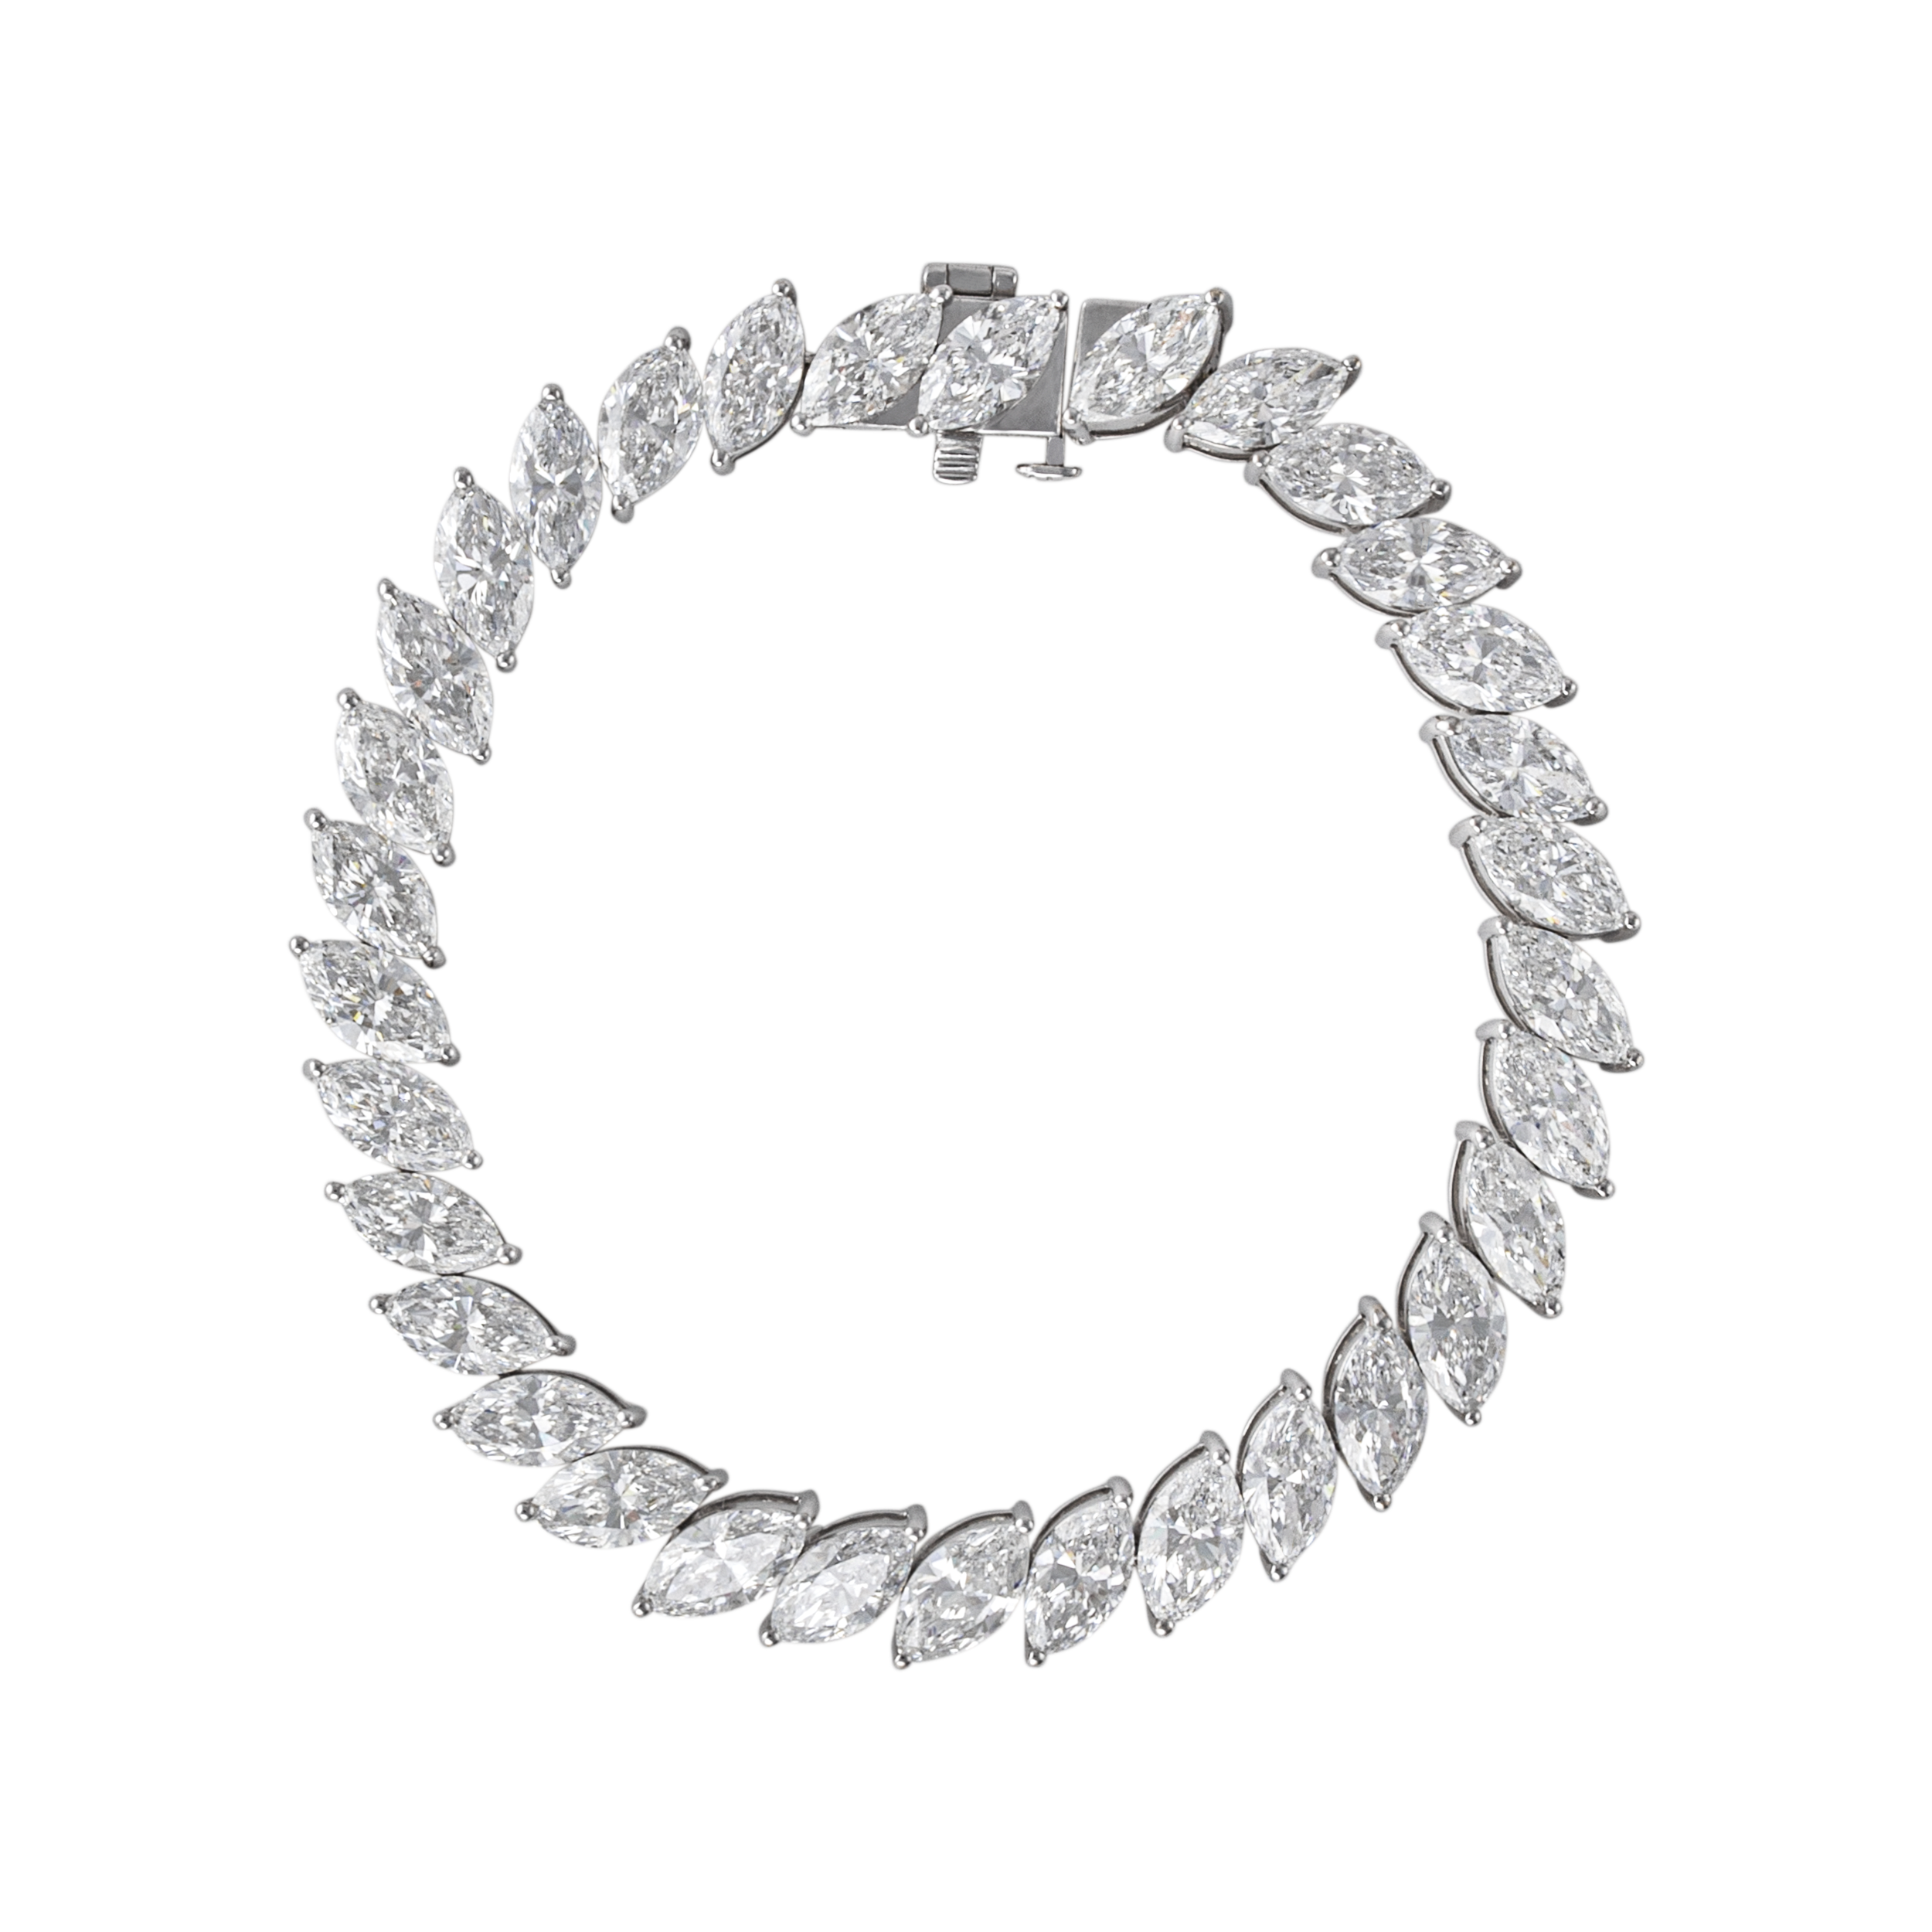 Lab Grown Diamond Bracelet | SKU: 0019053073